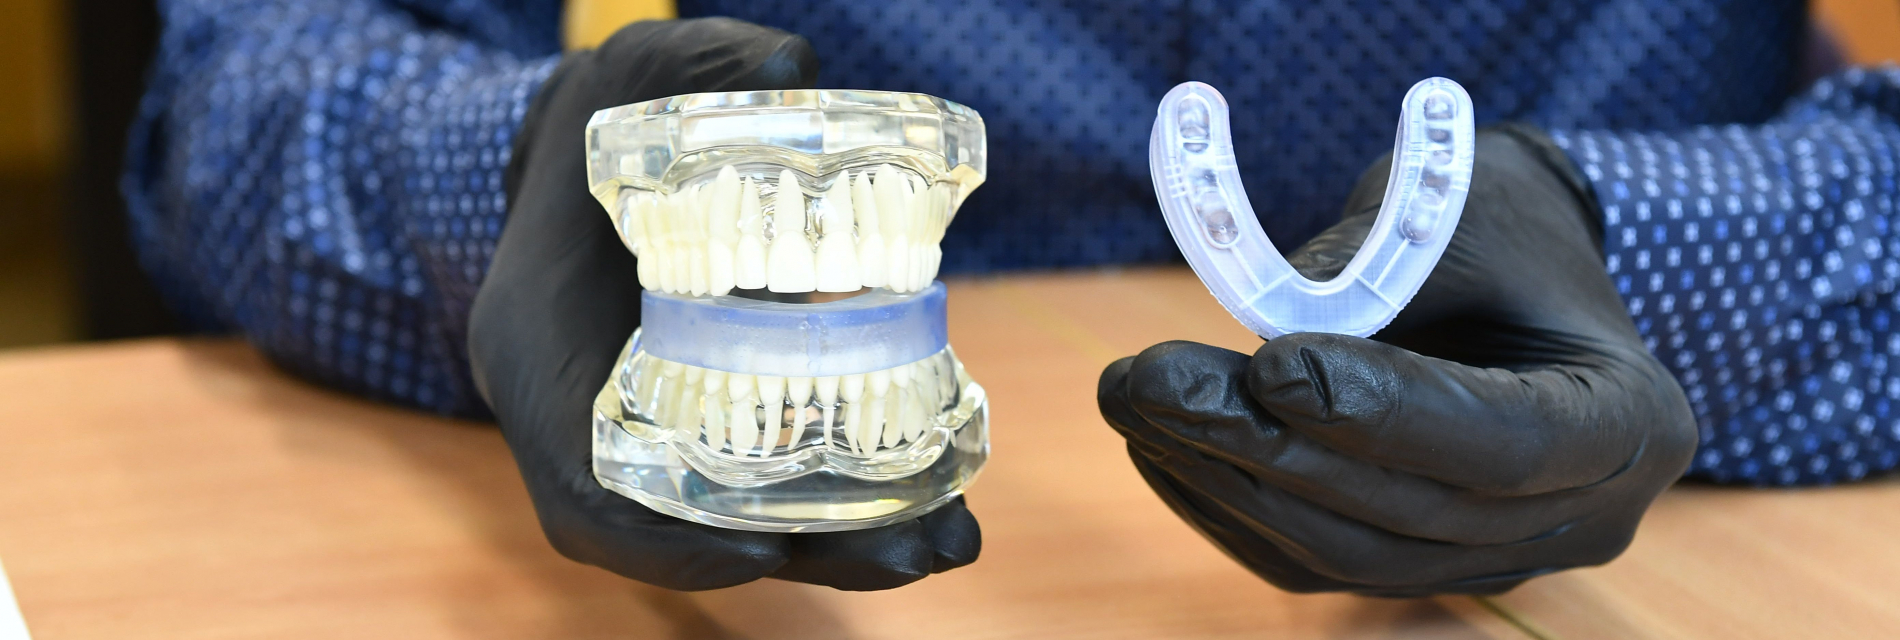 Model szczęki i wkładka dentystyczna - zdjęcie